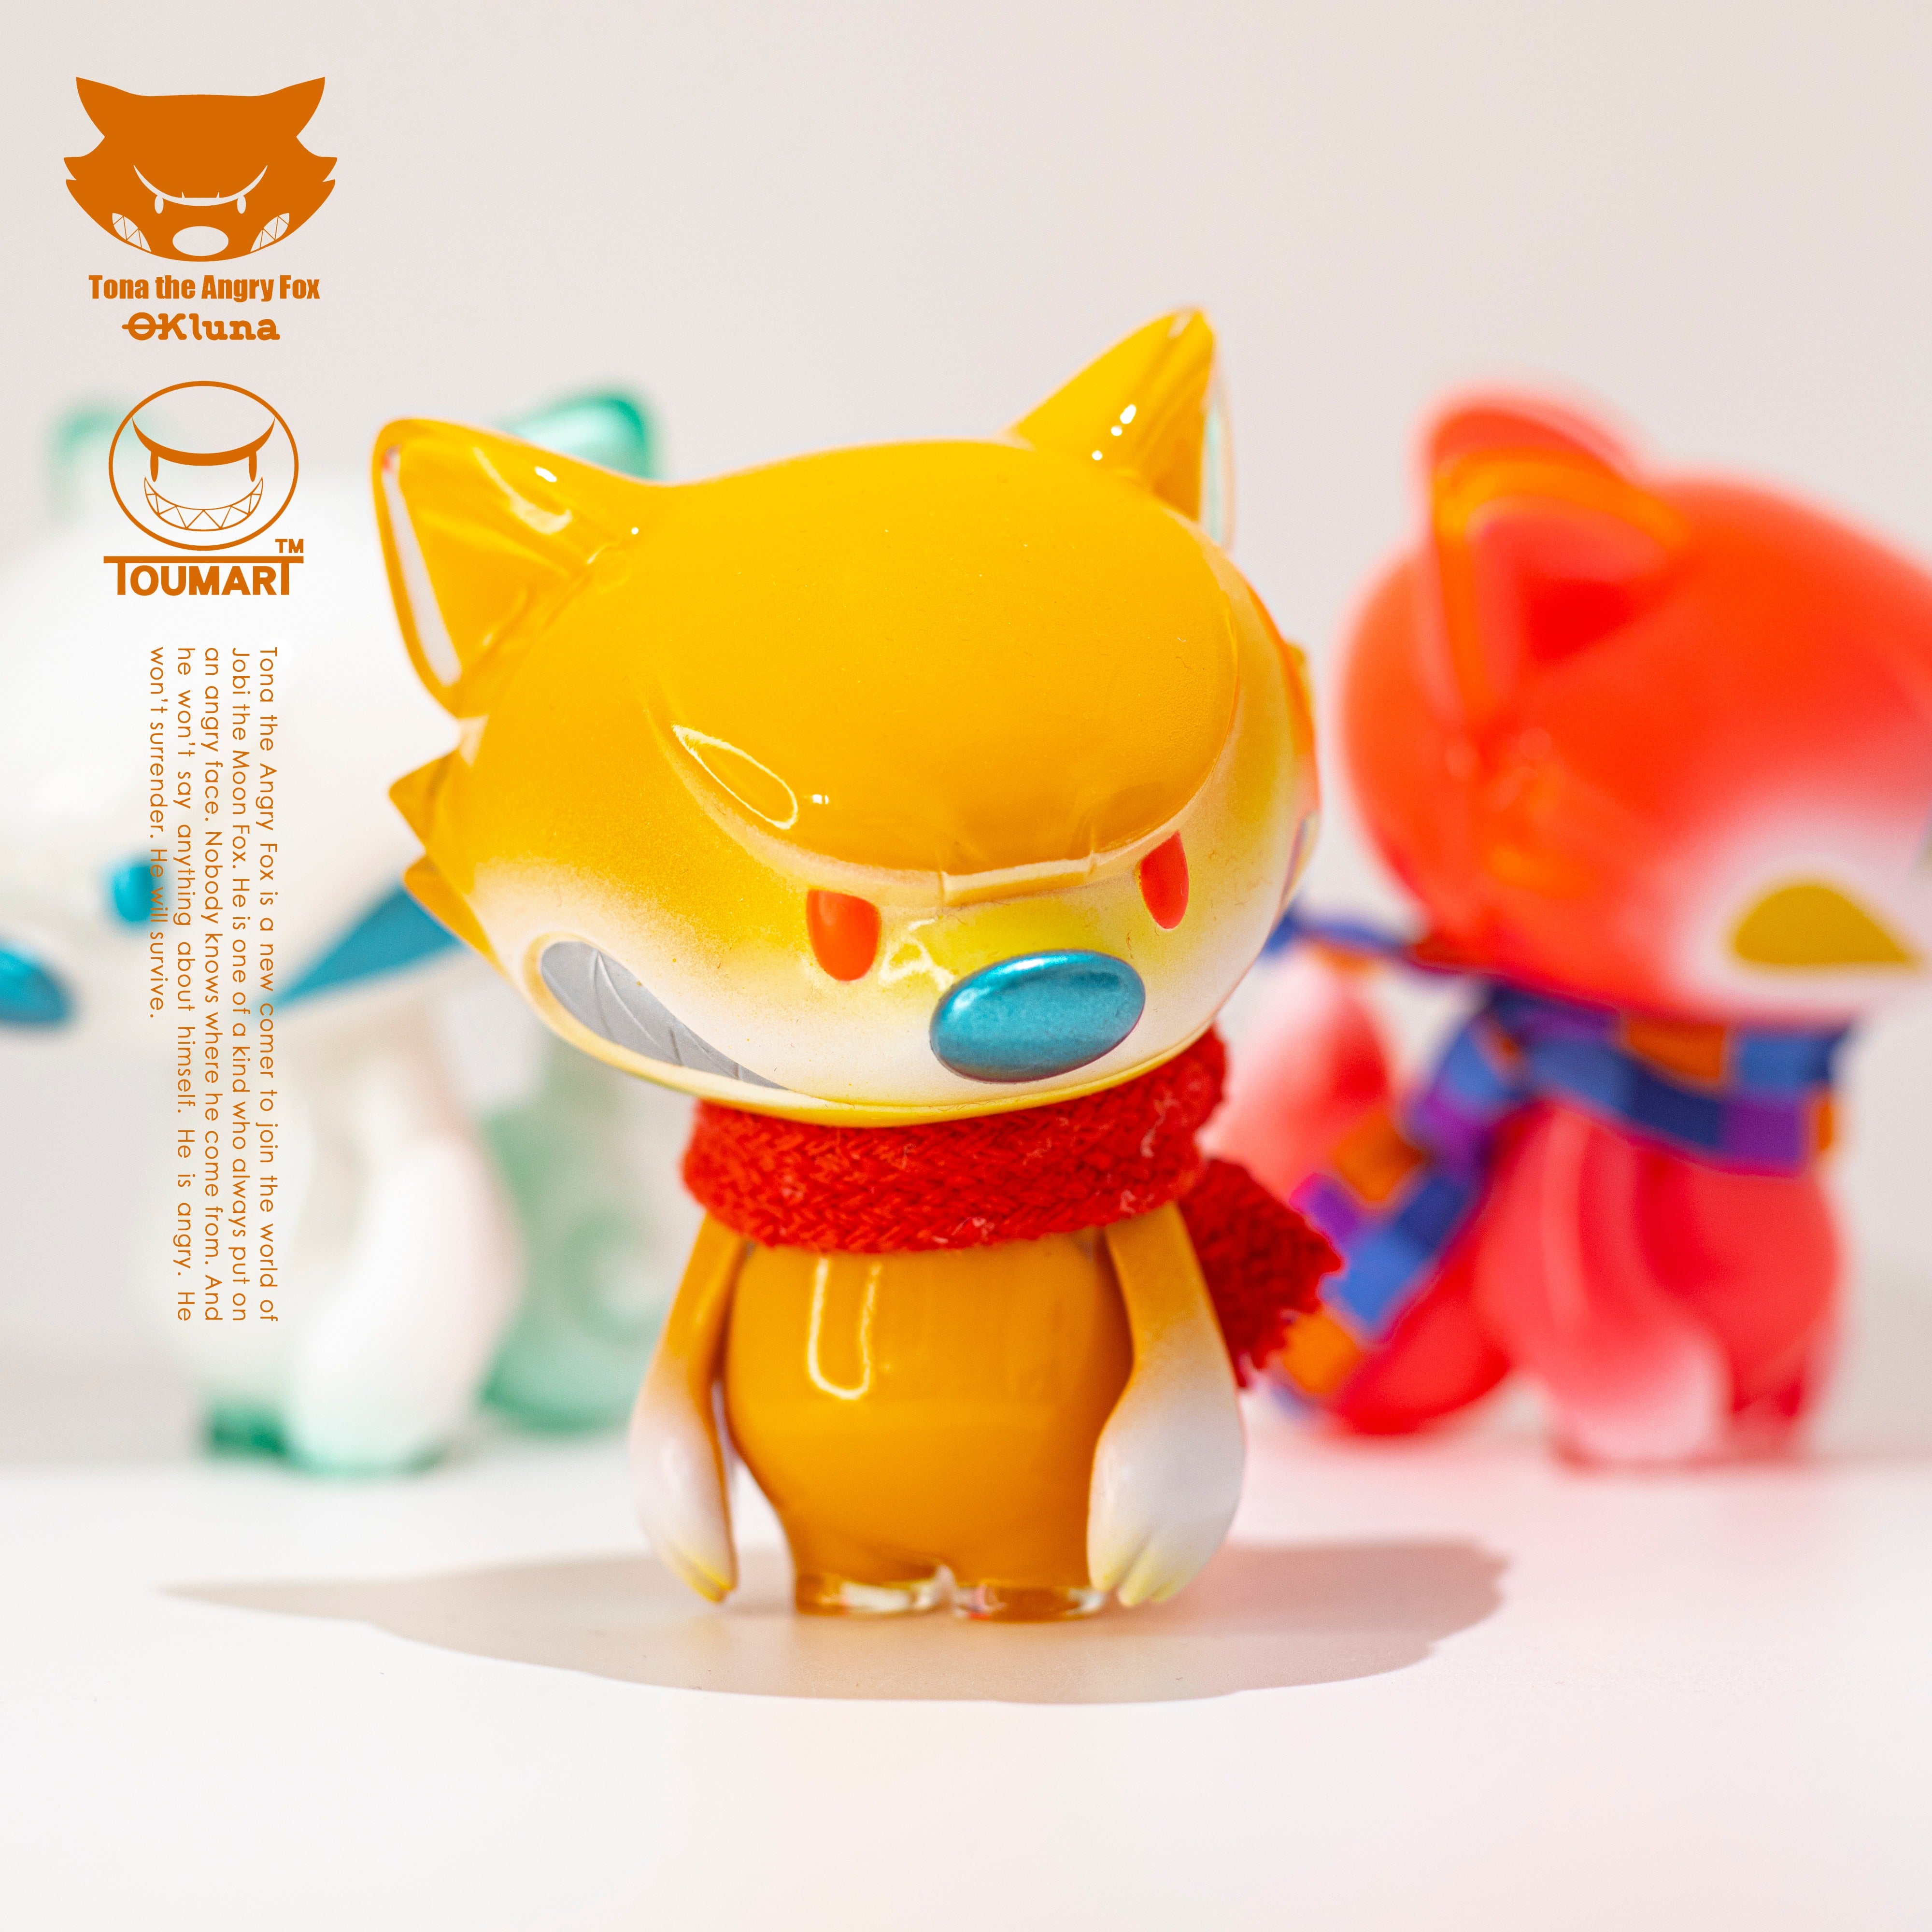 Lil’ Tona The Angry Fox by Touma x Ok Luna